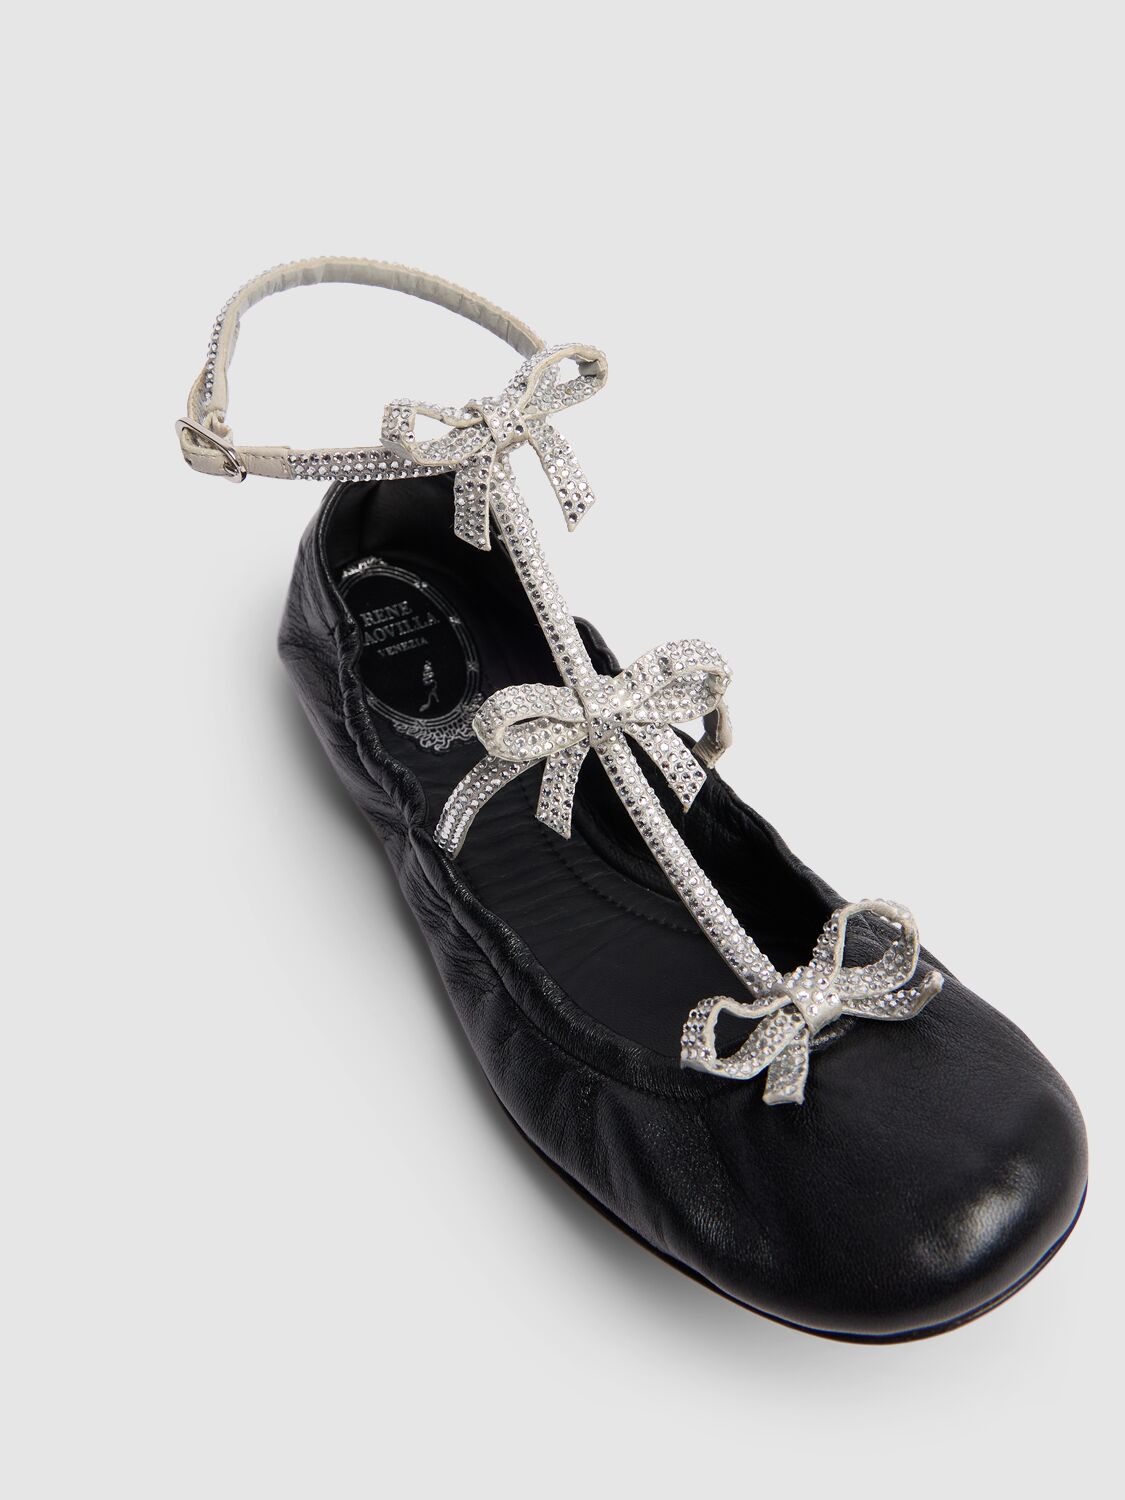 Shop René Caovilla 10mm Caterina Leather Ballerina Flats In Black/silver